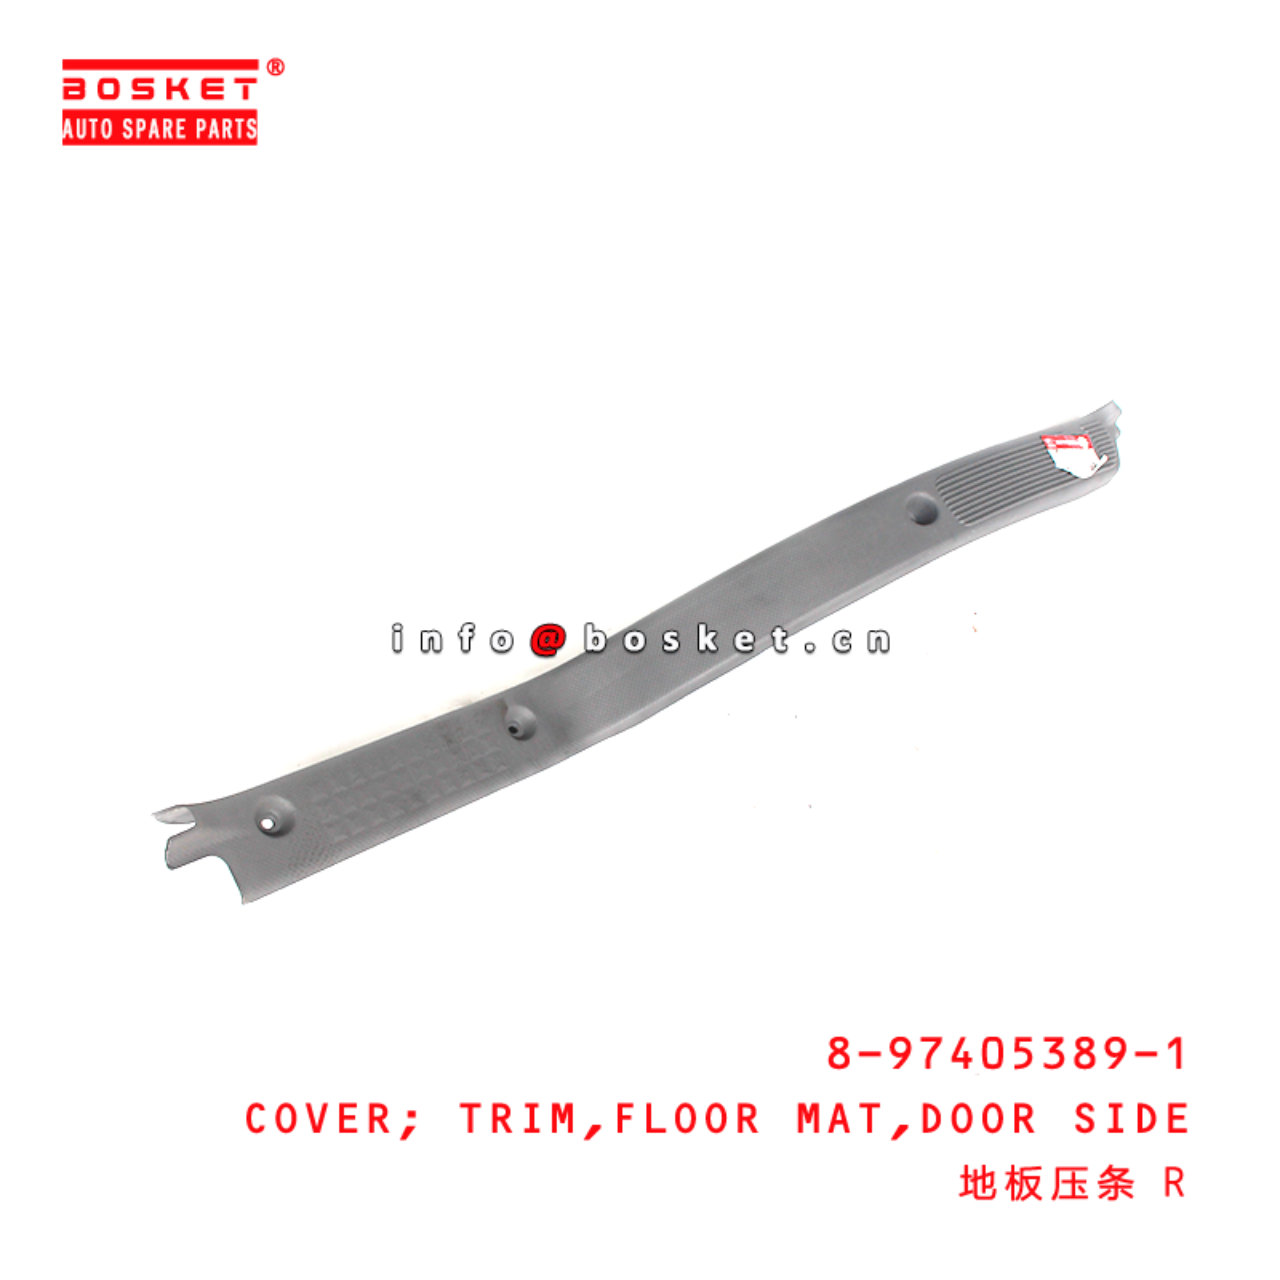 8-97405389-1 Door Side Floor Mat Trim Cover Suitable for ISUZU NPR75 NMR85  8974053891